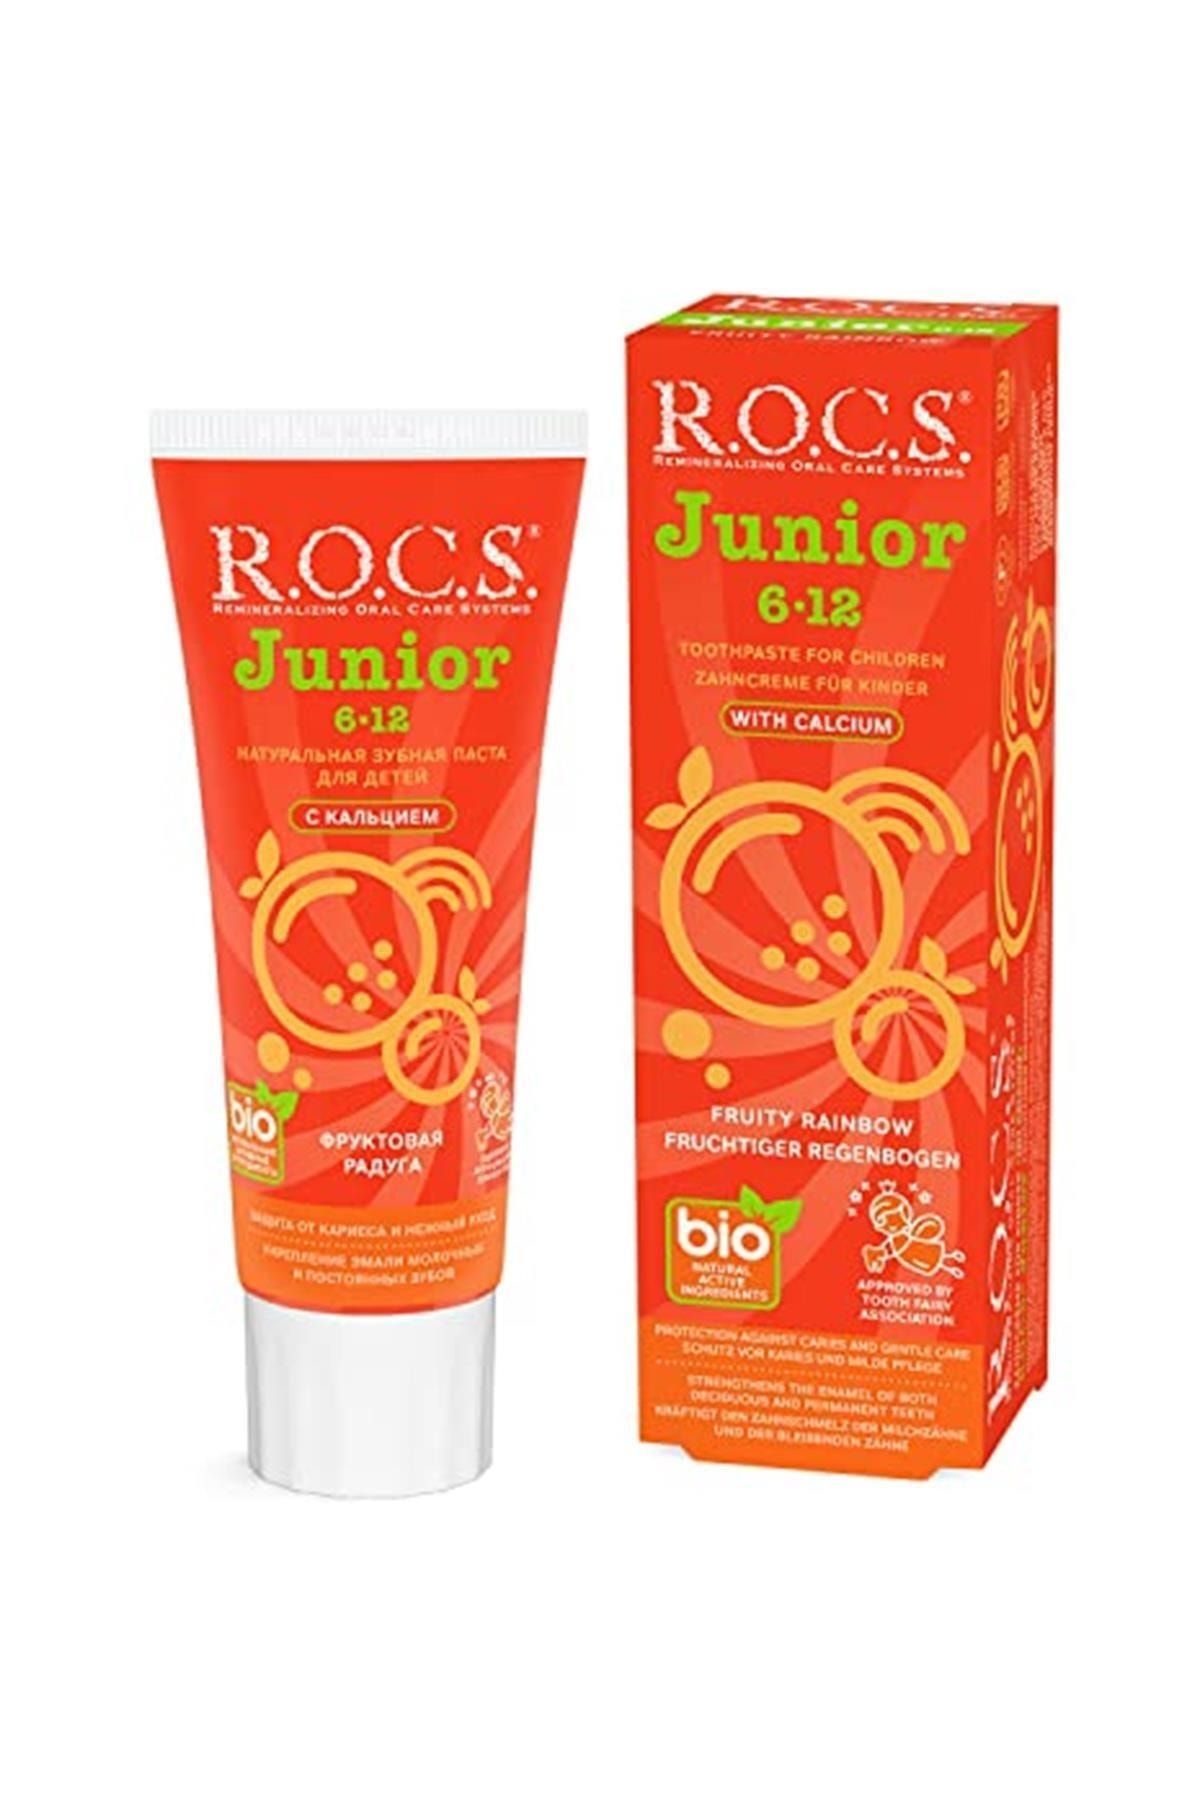 R.O.C.S. Junior Çocuklar İçin Bitkisel İçerikli Diş Macunu 6-12 Yaş Meyveli Gökkuşağı 60ml